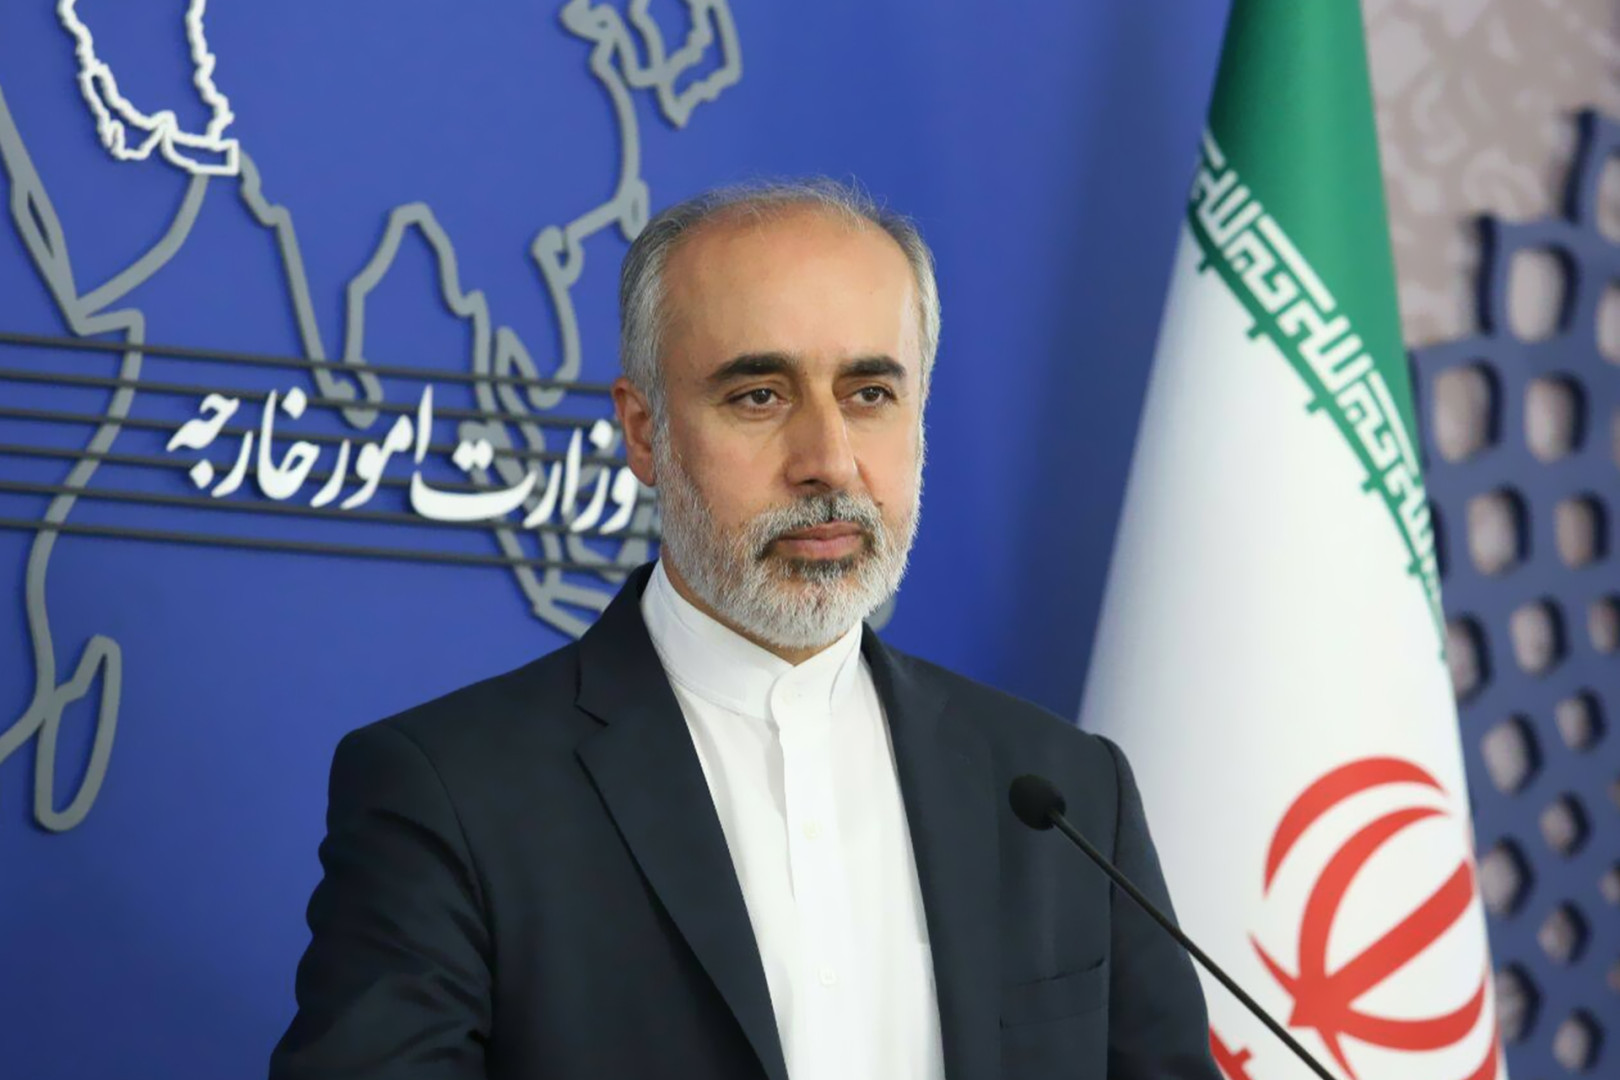 طهران ترد على إدانة بغداد وترى أن قصف أربيل "لا يتعارض" مع سيادة العراق